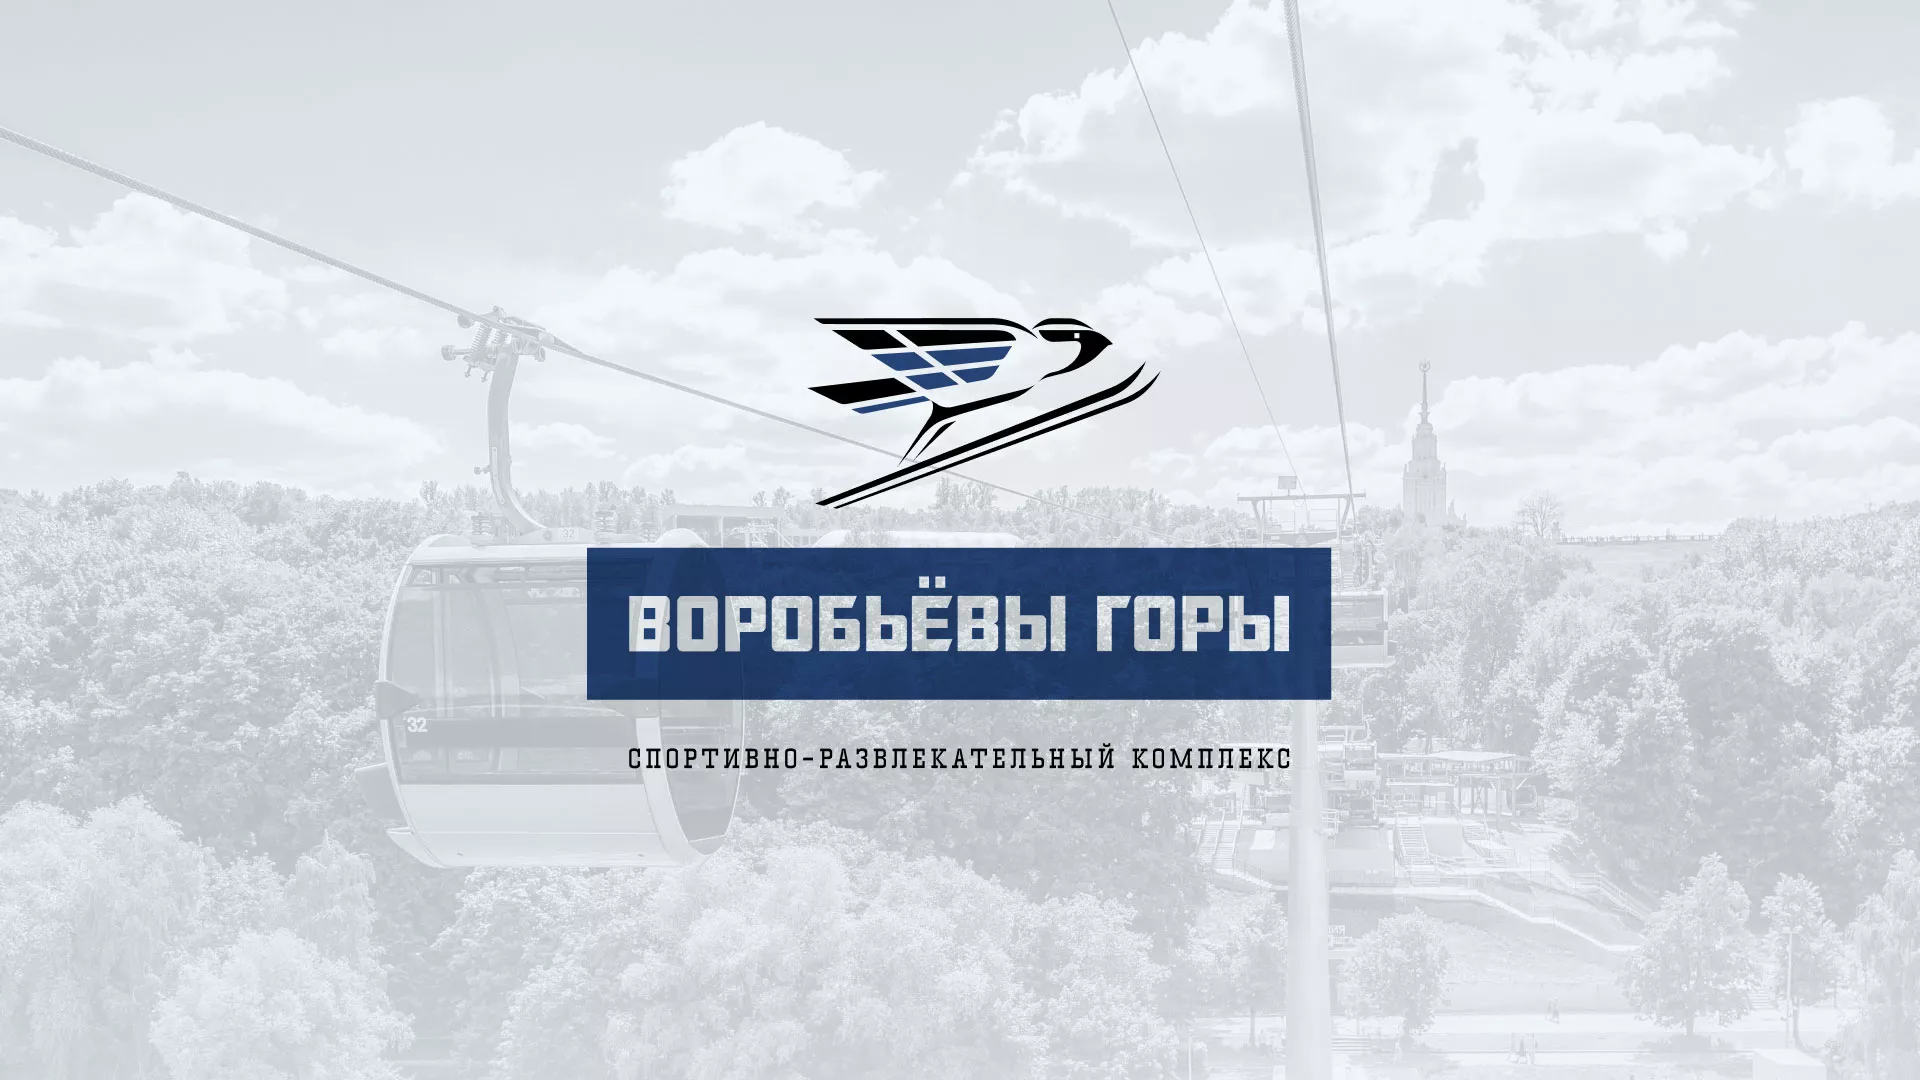 Разработка сайта в Екатеринбурге для спортивно-развлекательного комплекса «Воробьёвы горы»